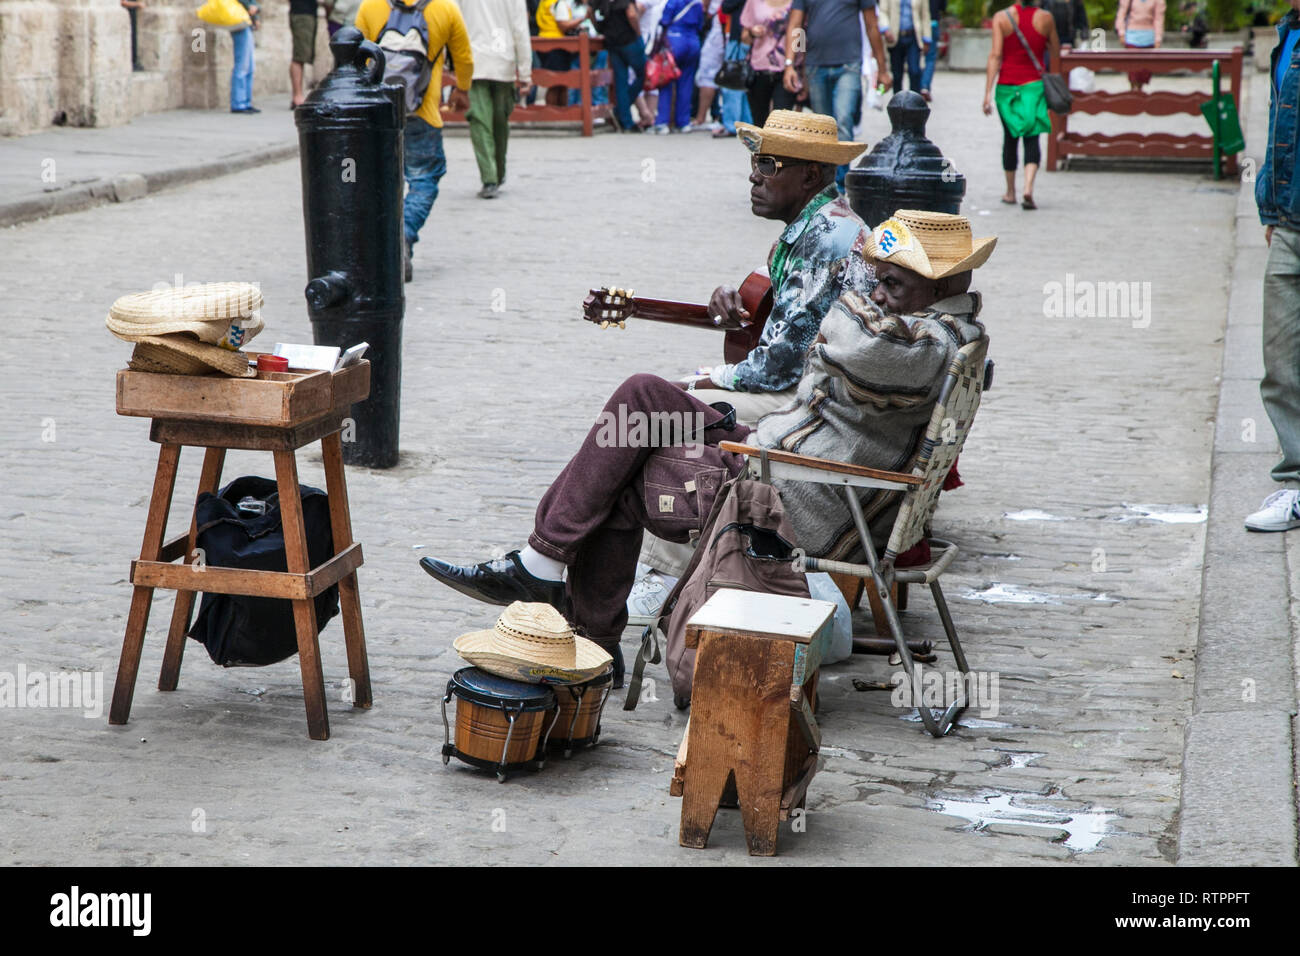 L'Avana, Cuba - 18 Gennaio 2013: una vista delle strade della città con il popolo cubano. Musicisti di strada prendere una pausa. Foto Stock